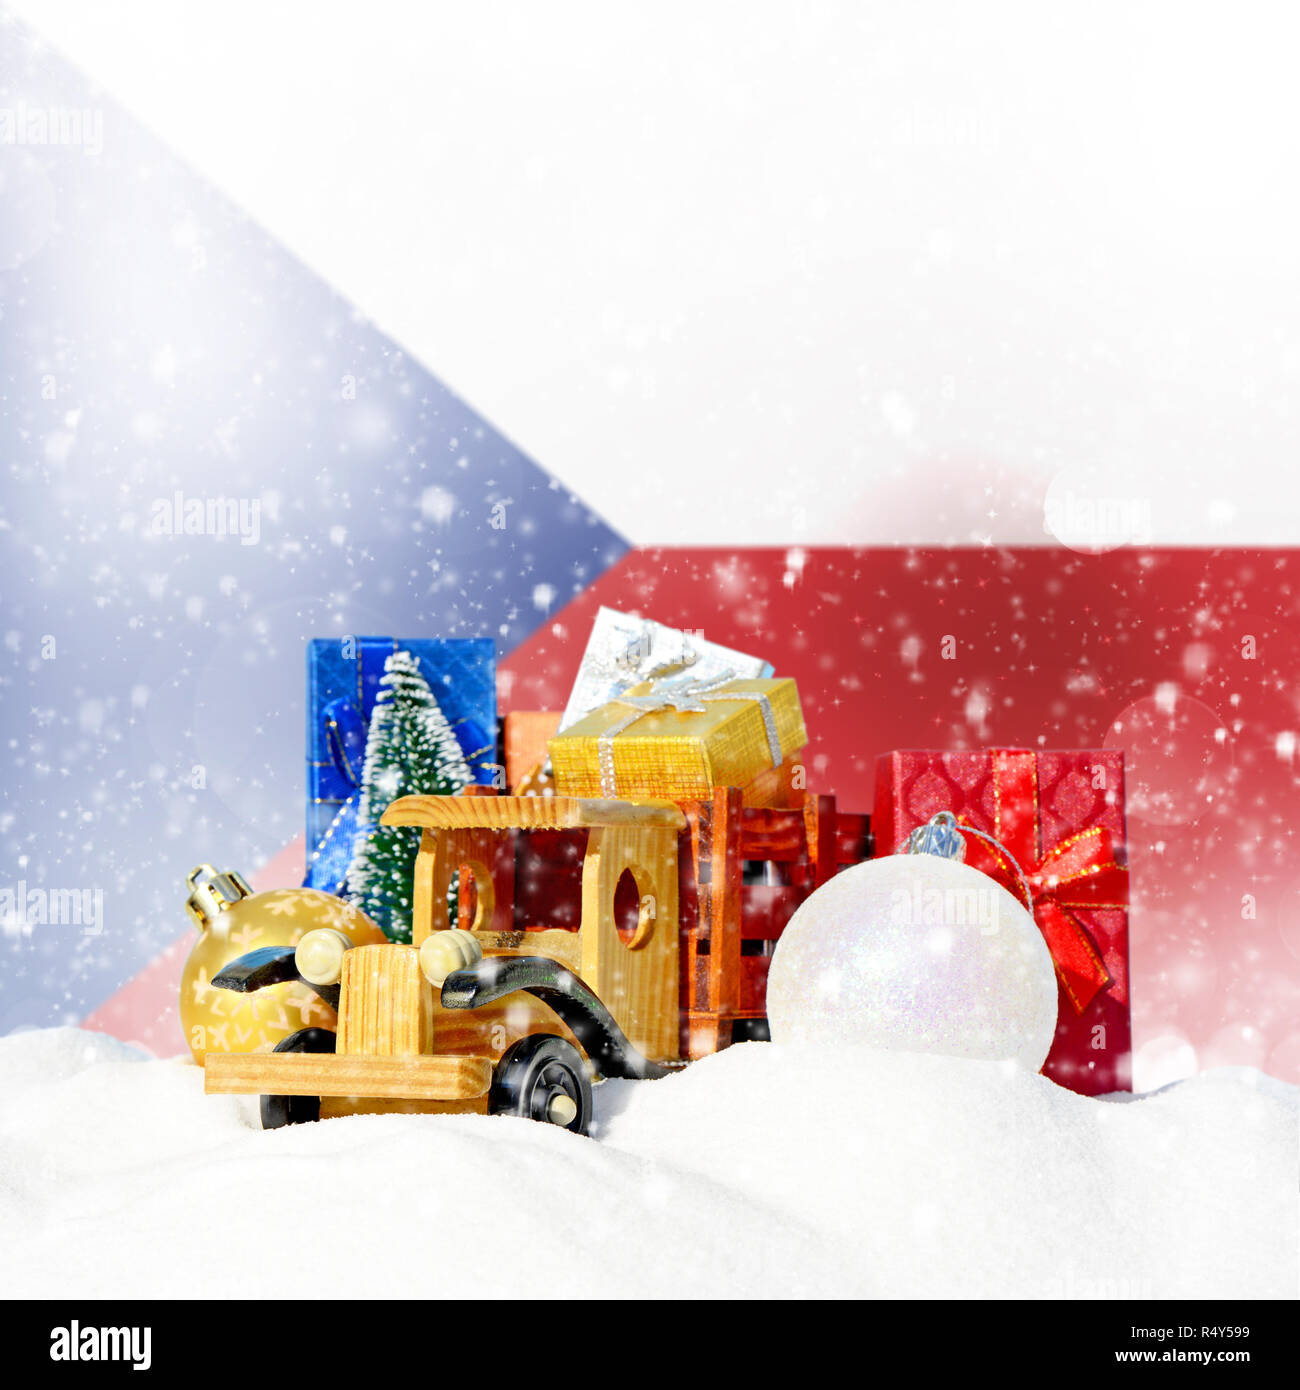 Weihnachten Hintergrund. Spielzeug-LKW mit Geschenken, Neues Jahr Tanne, Kugeln im Schneetreiben und Tschechische Republik Flagge Stockfoto